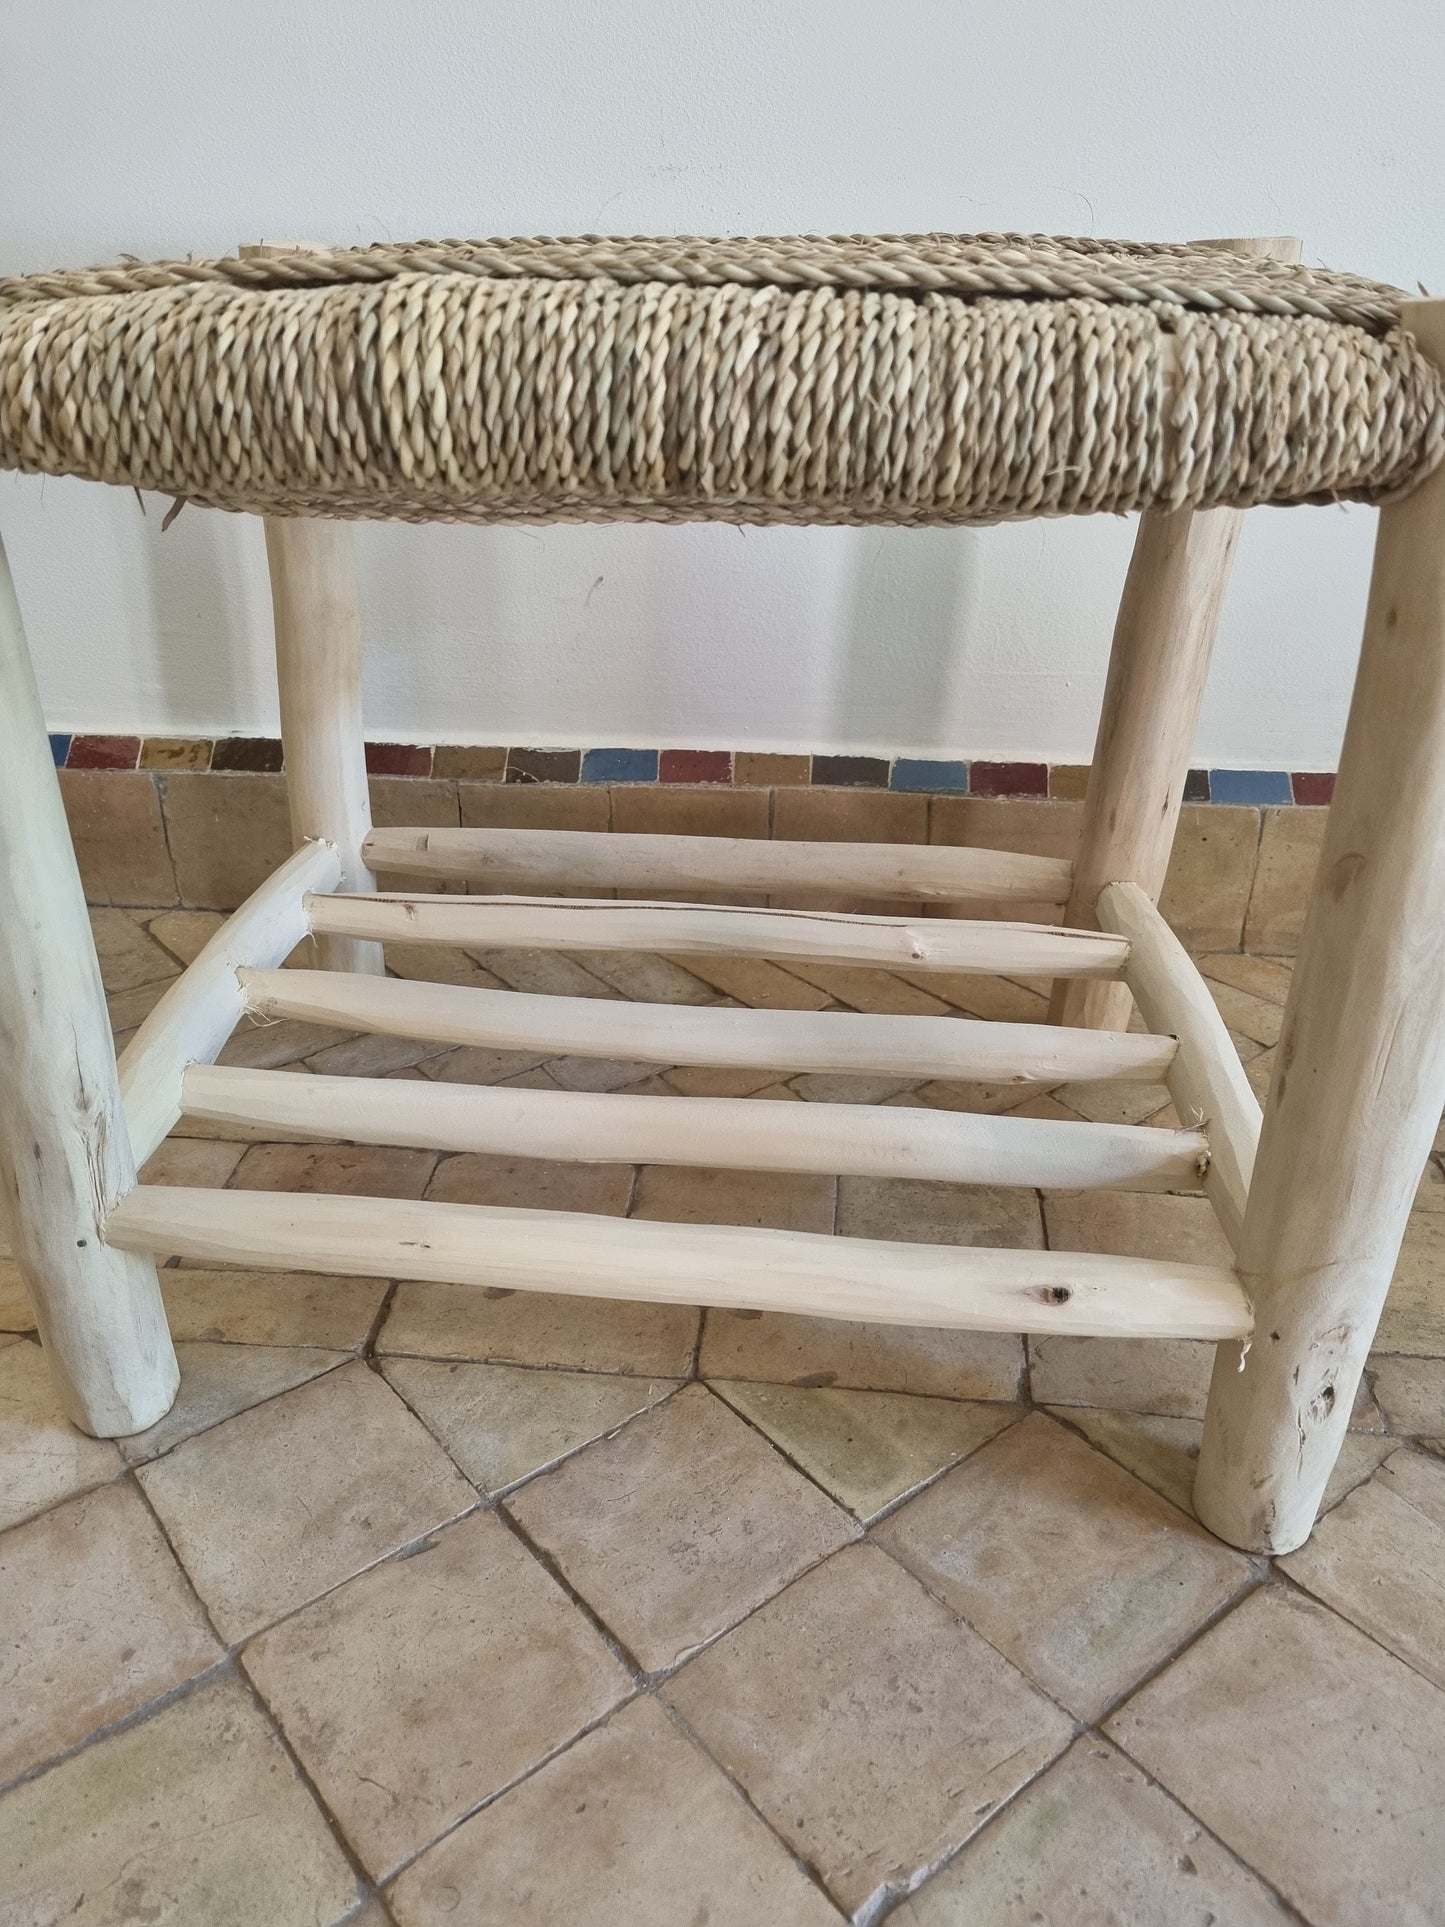 Un meuble en bois massif avec un banc orné d'un tressage naturel, apportant une touche d'authenticité à l'intérieur